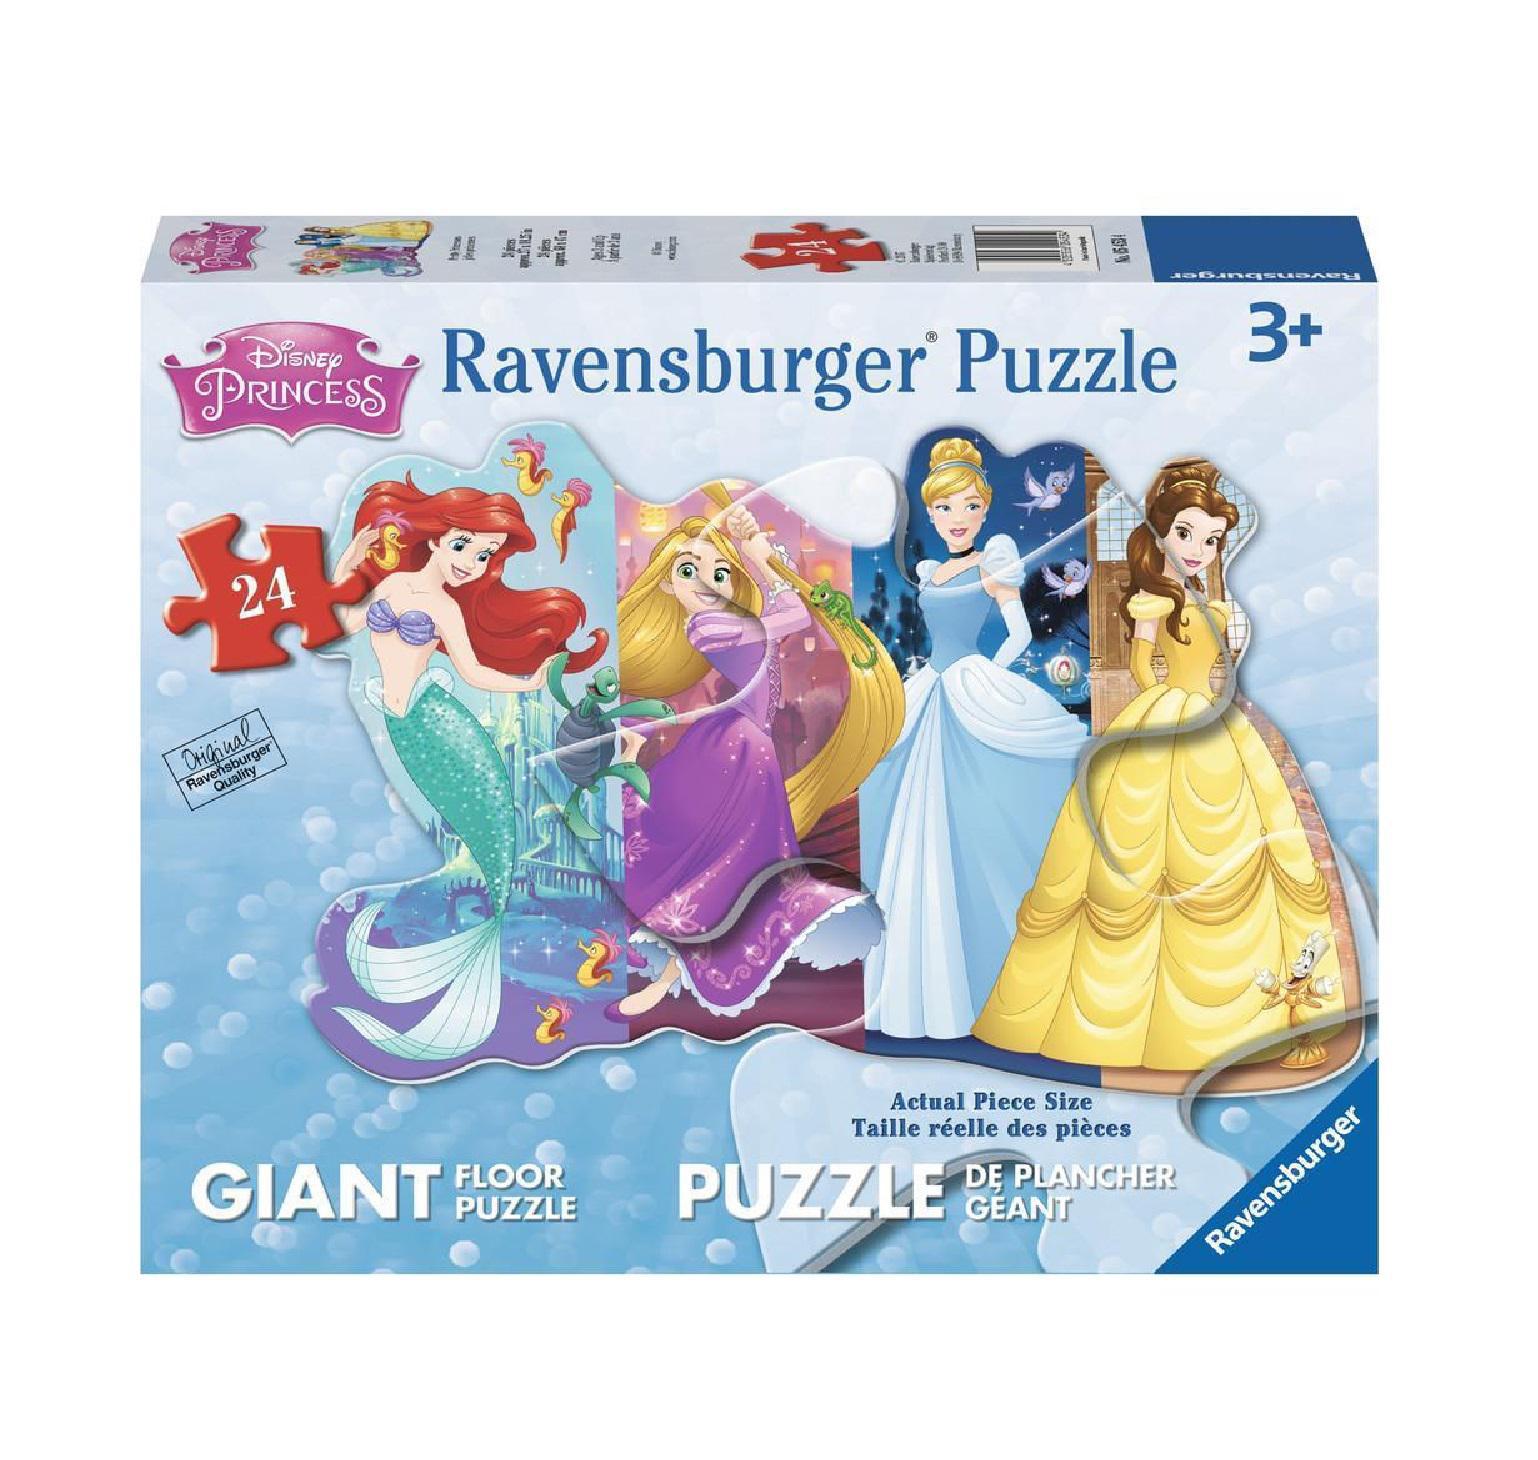 Ravensburger 3D Jigsaw Puzzle  Disney Castle 216 Piece - Golden Gait  Mercantile